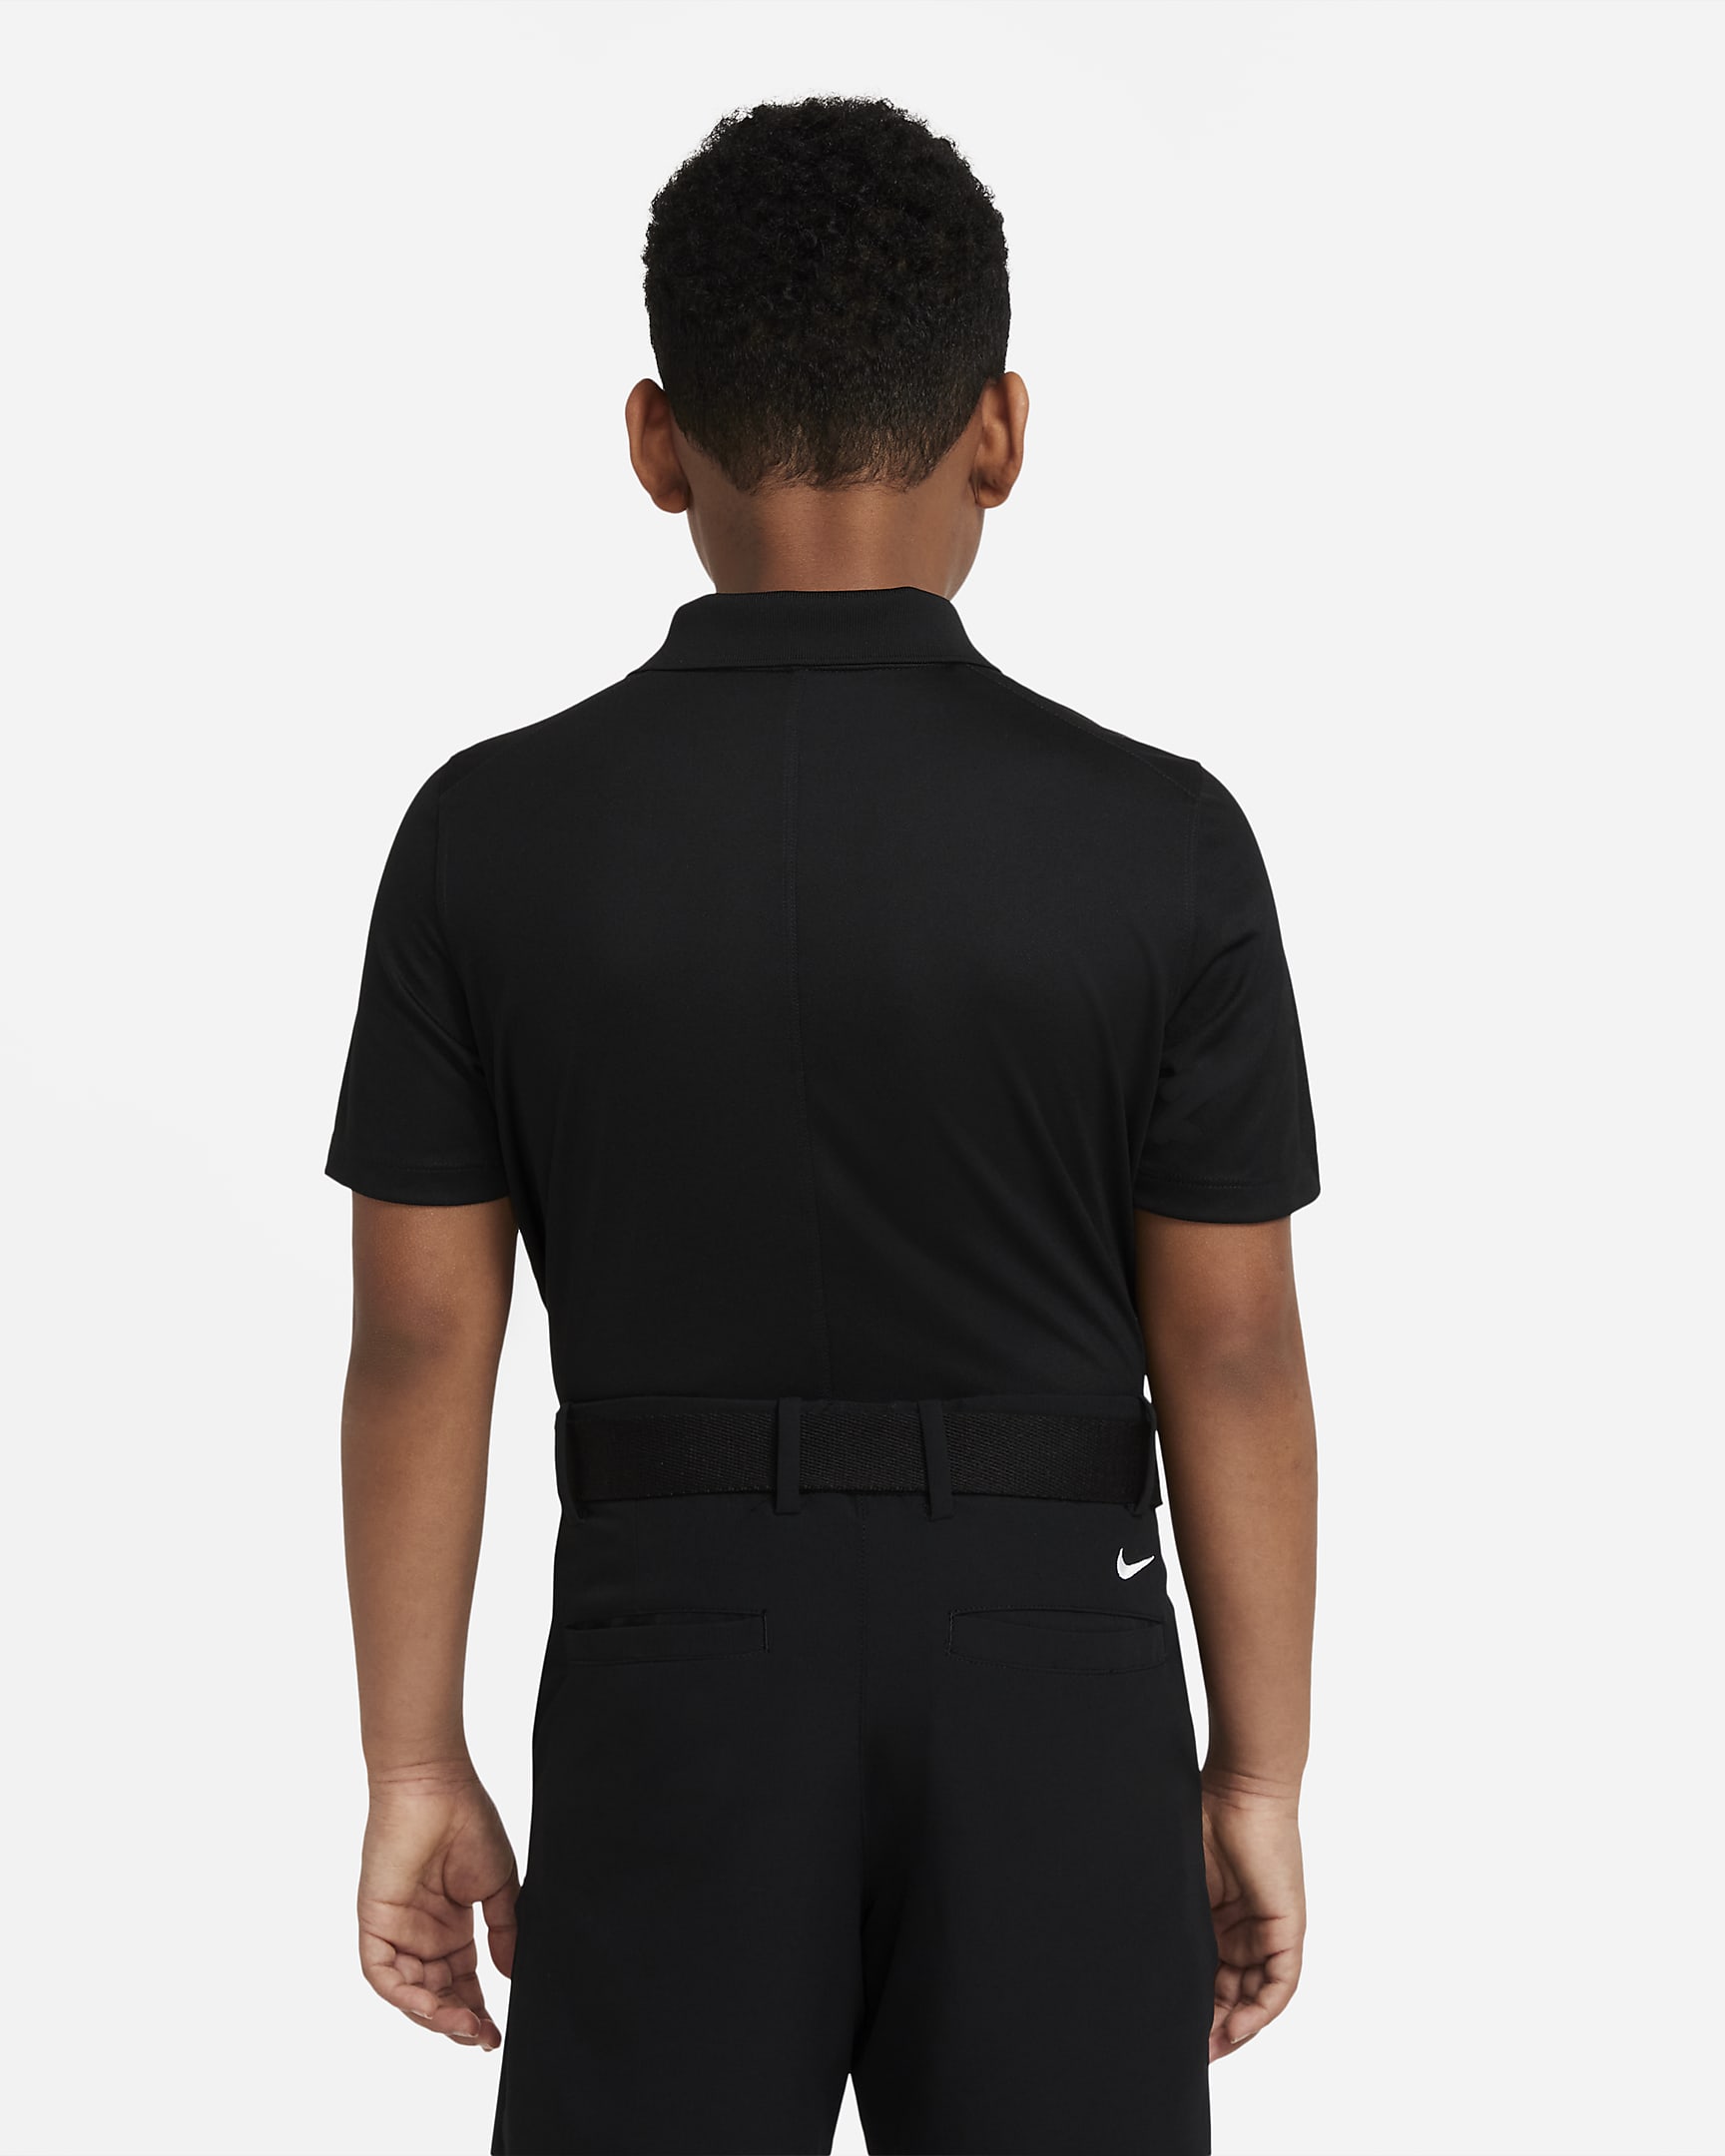 Nike Dri-FIT Victory golfpóló nagyobb gyerekeknek (fiúk) - Fekete/Fehér